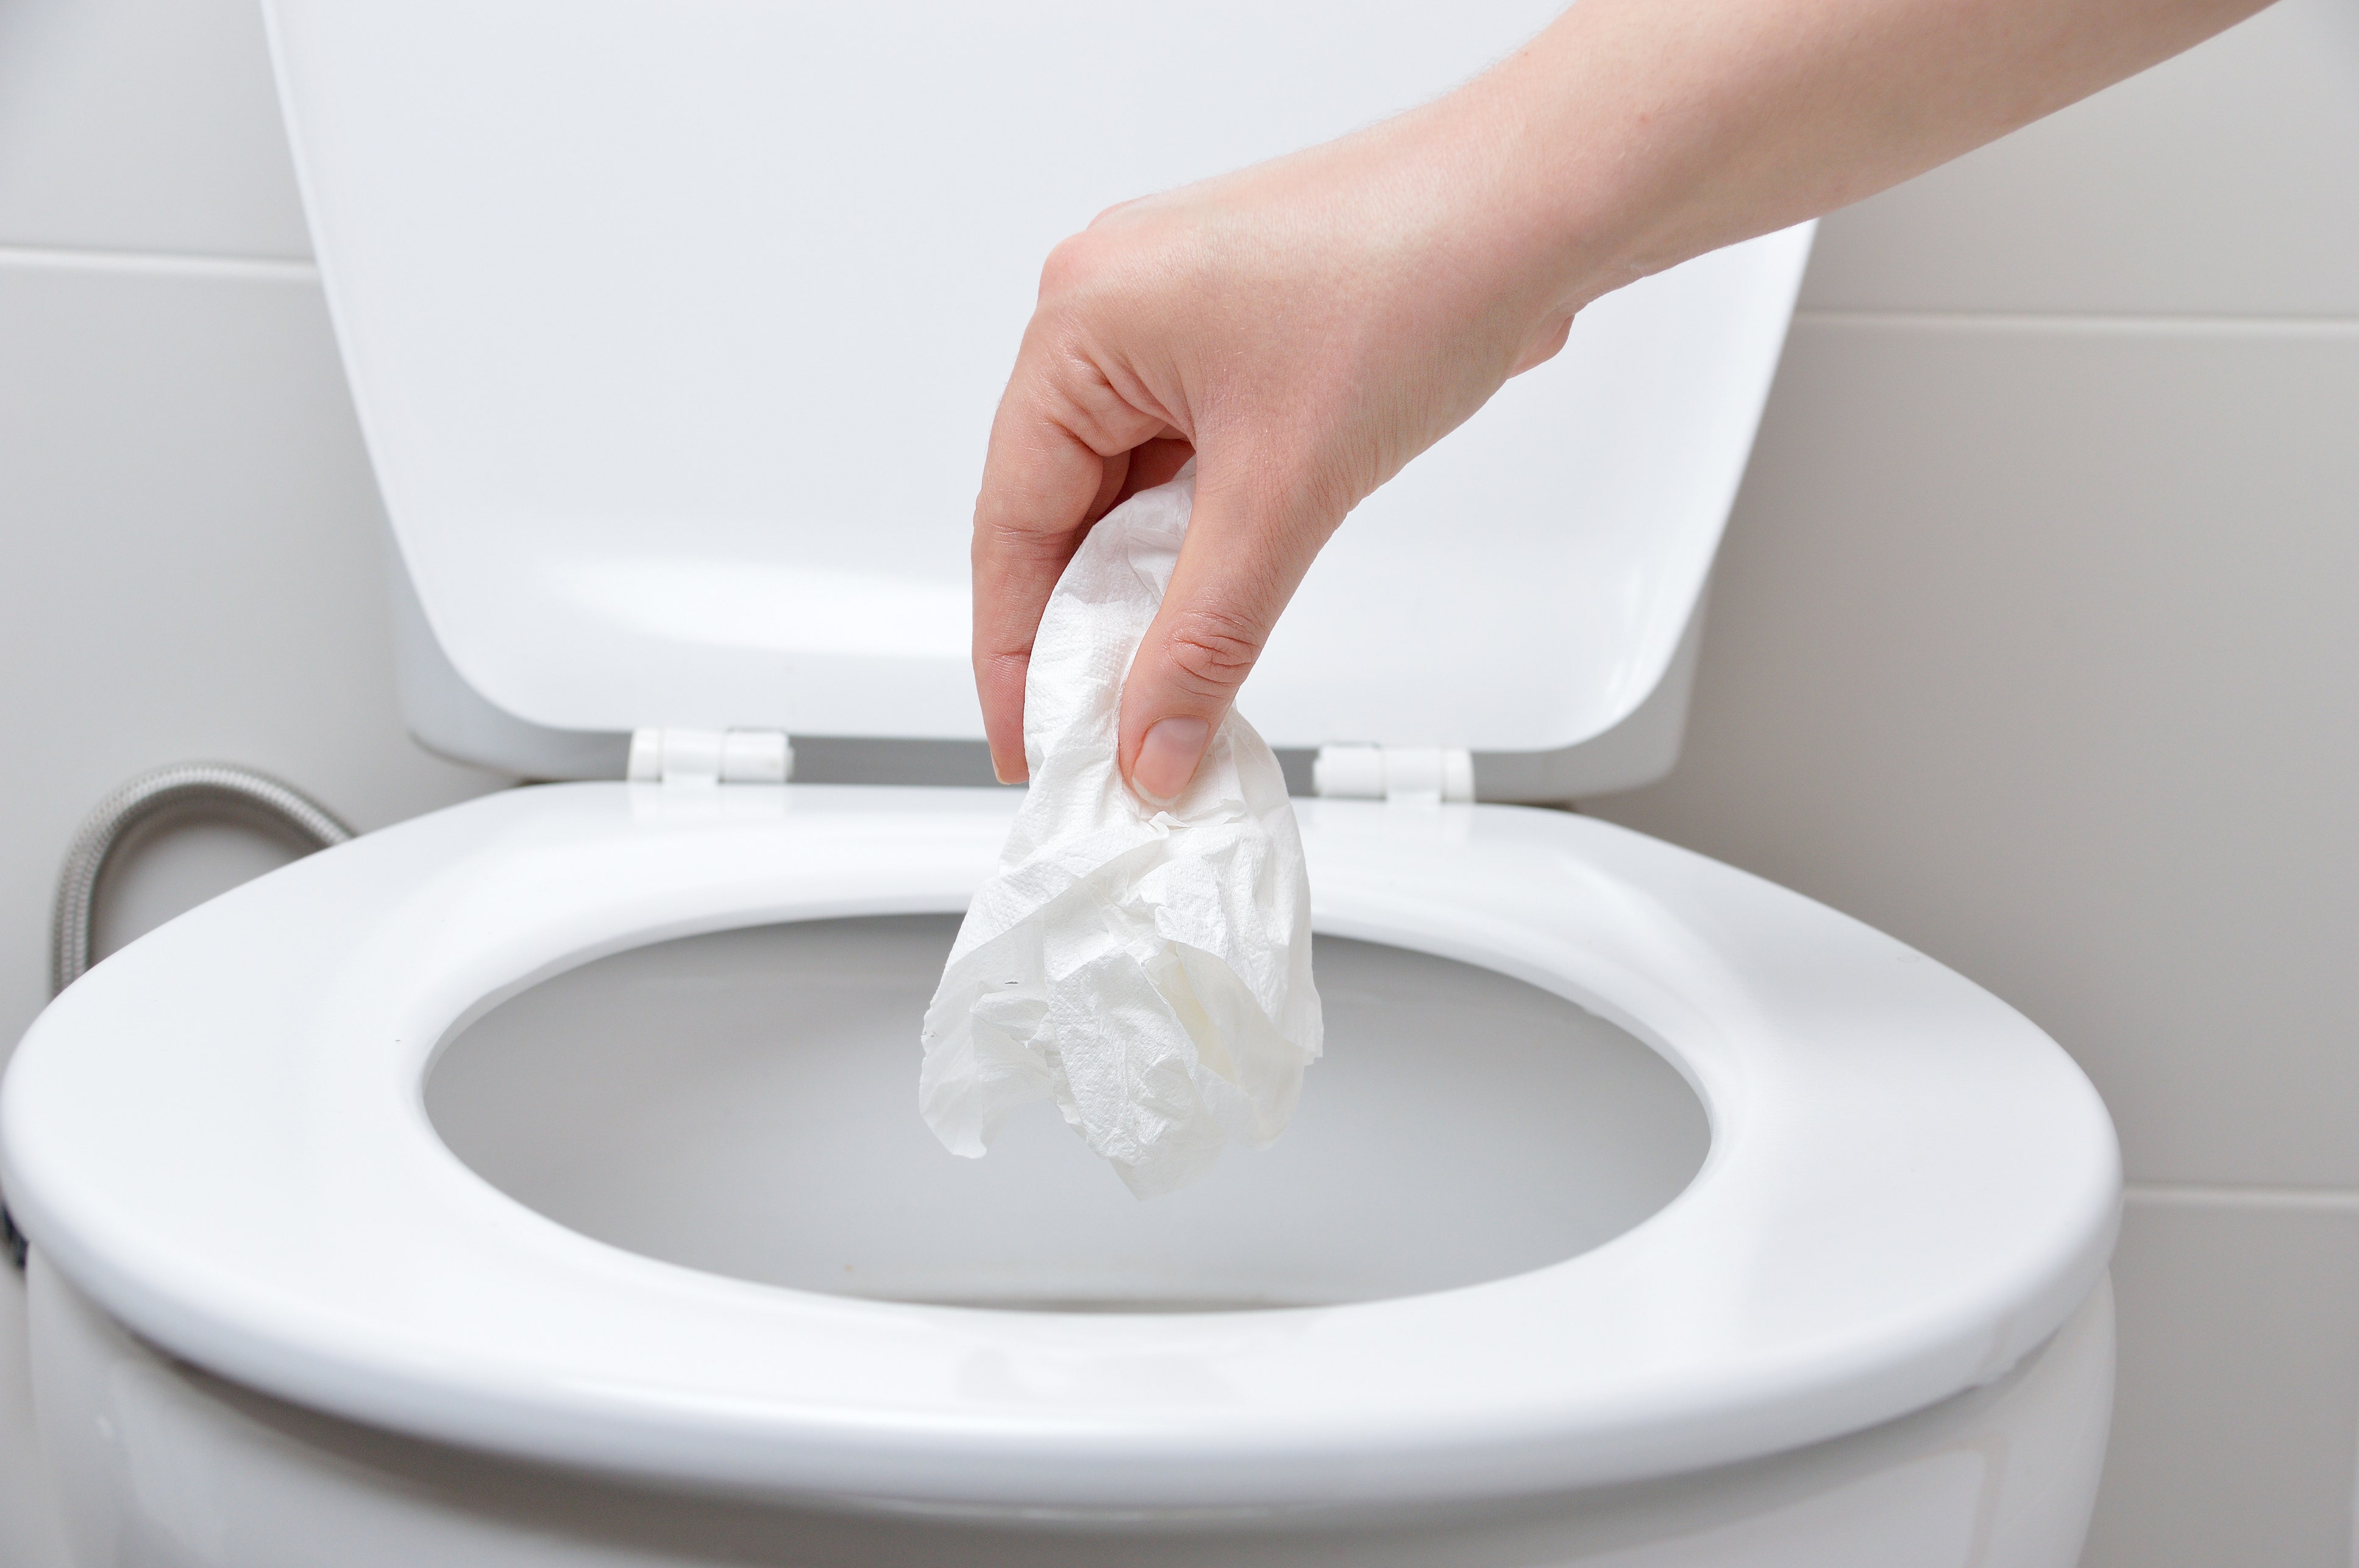 Туалетная бумага в унитаз можно ли бросать. Туалетную бумагу в унитаз. Смываемая туалетная бумага. Туалетную бумагу смывать в унитаз.